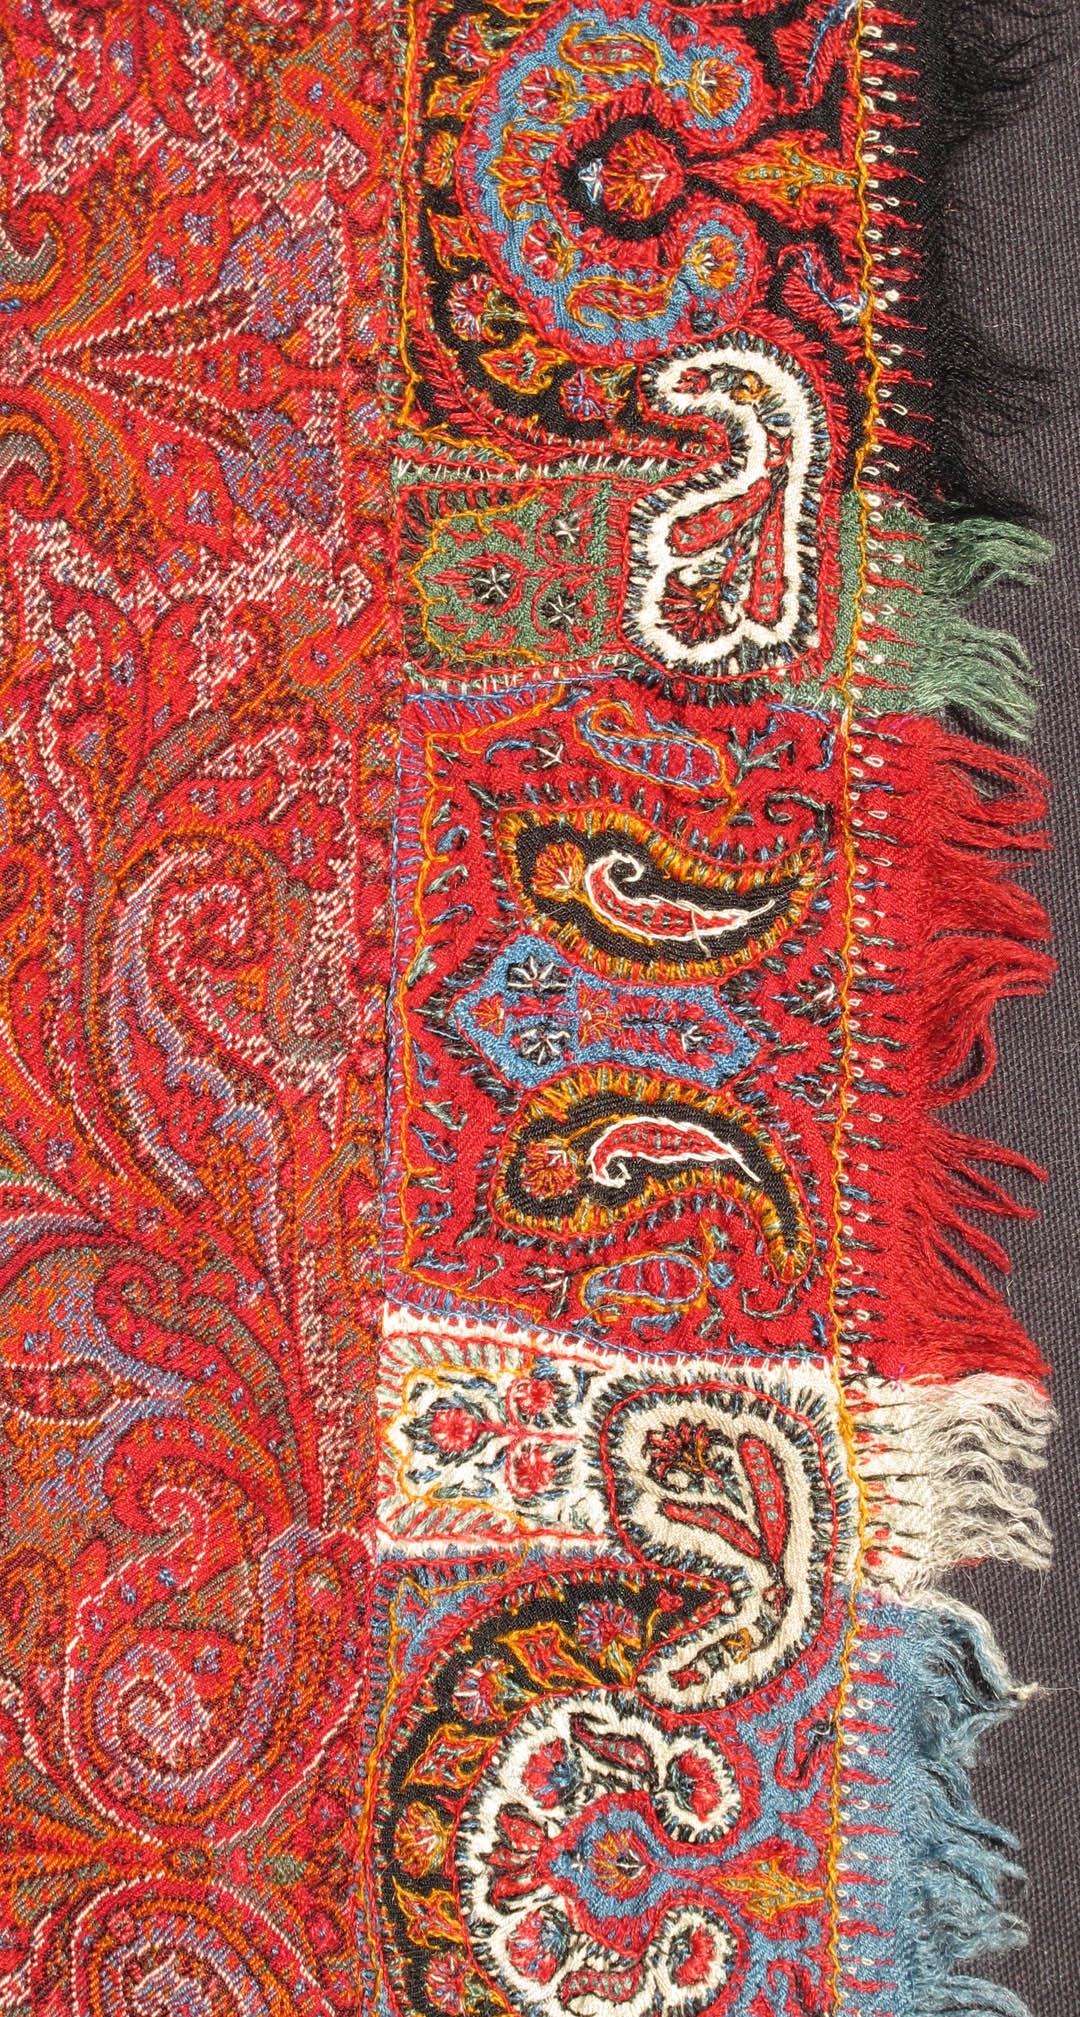 Antique châle indien fait à la main en textile Paisley avec une bordure rouge et brillante.
 
châle indien ancien du 19ème siècle en tissu Paisley fait à la main avec des couleurs brillantes  L11-0907, Taille/ , Pays d'origine Indian Hand made